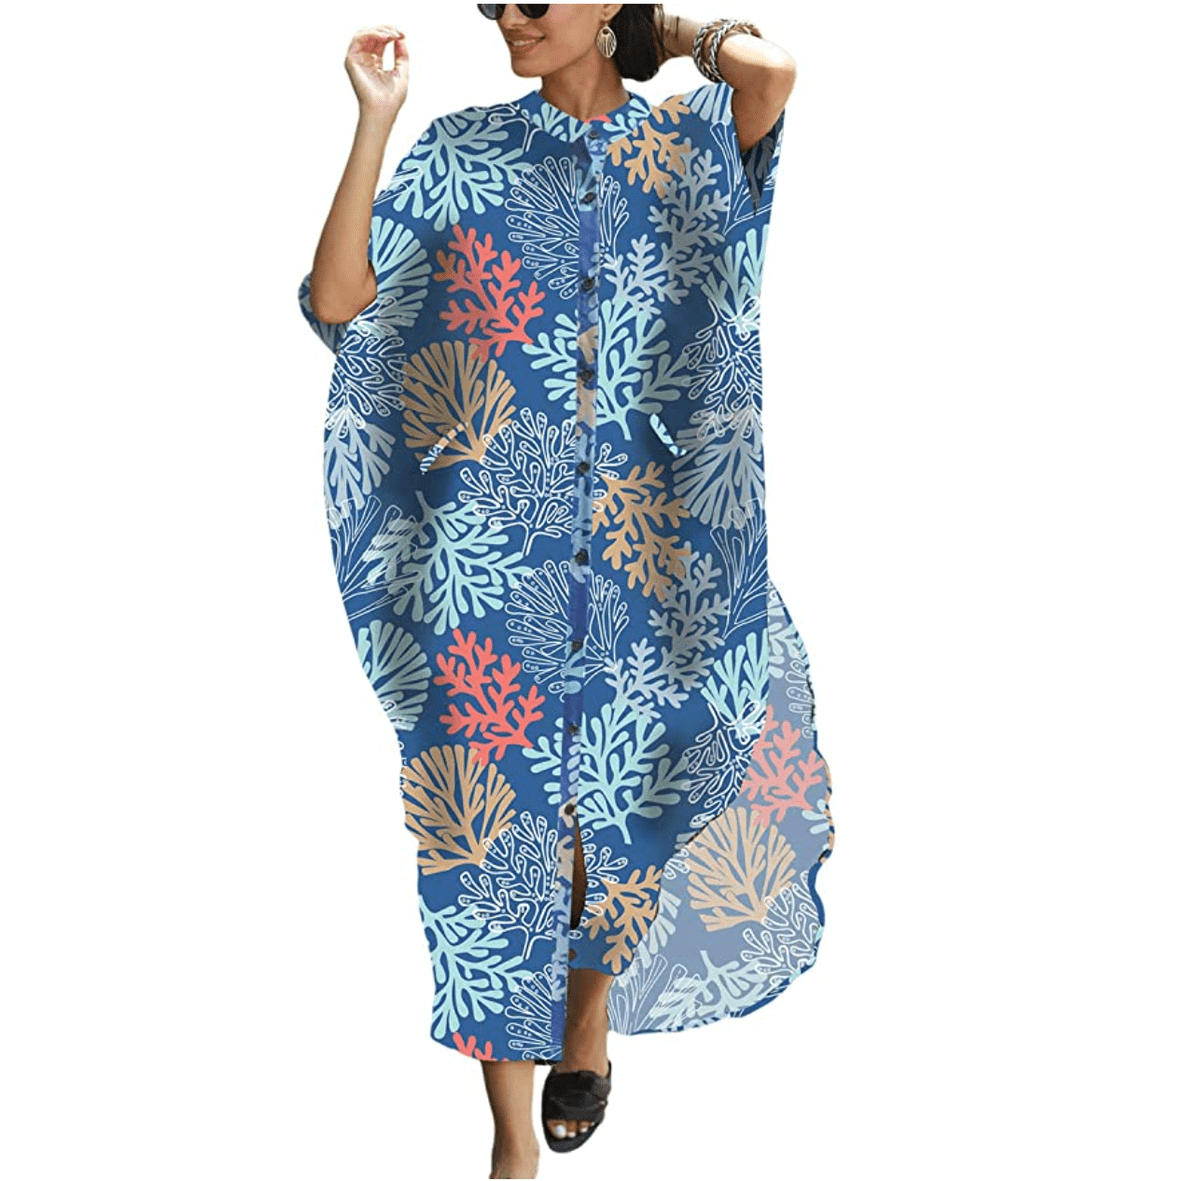 Bsubseach Women Beach Shirt Dress in Coral Print